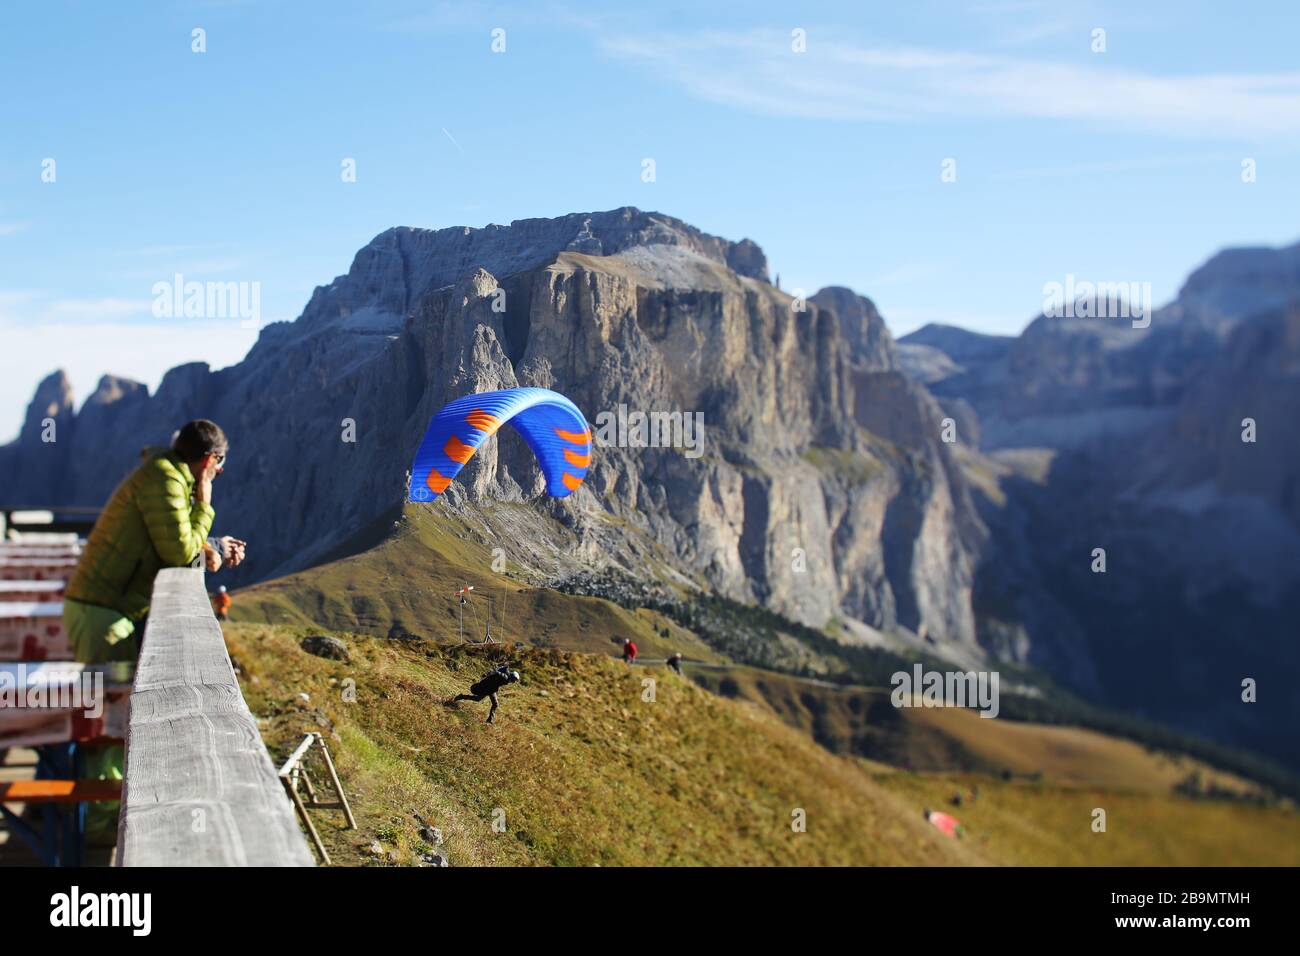 Un parapente au col Rodella avec le Groupe Sella en arrière-plan. Dolomites, Italie. Banque D'Images